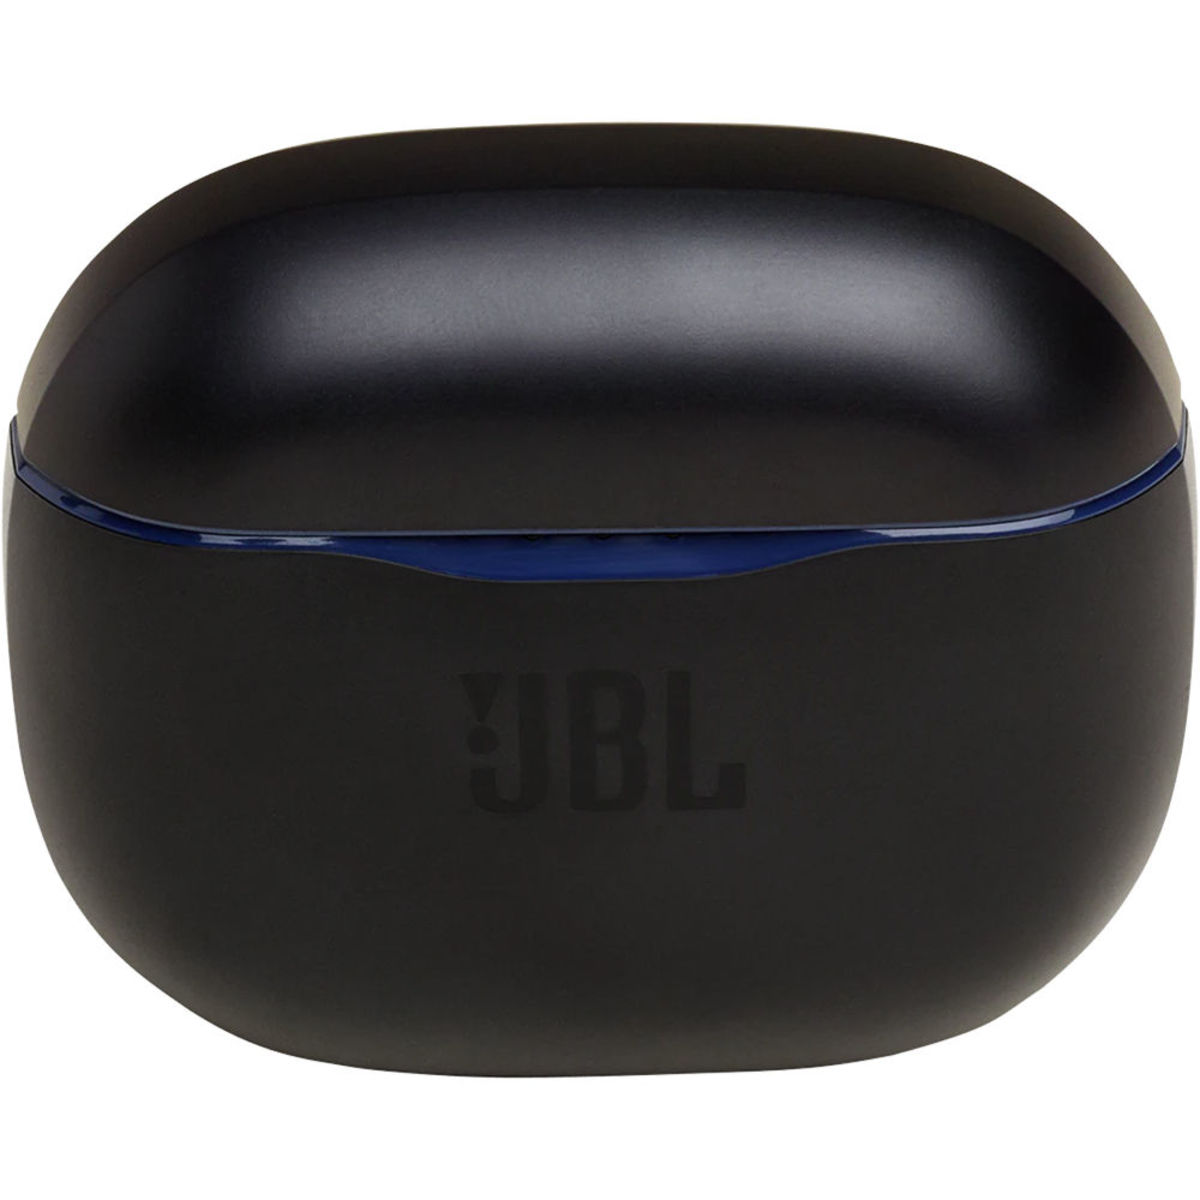 JBL Truly Wireless In-Ear Headphone TUNE 120TWS Blue